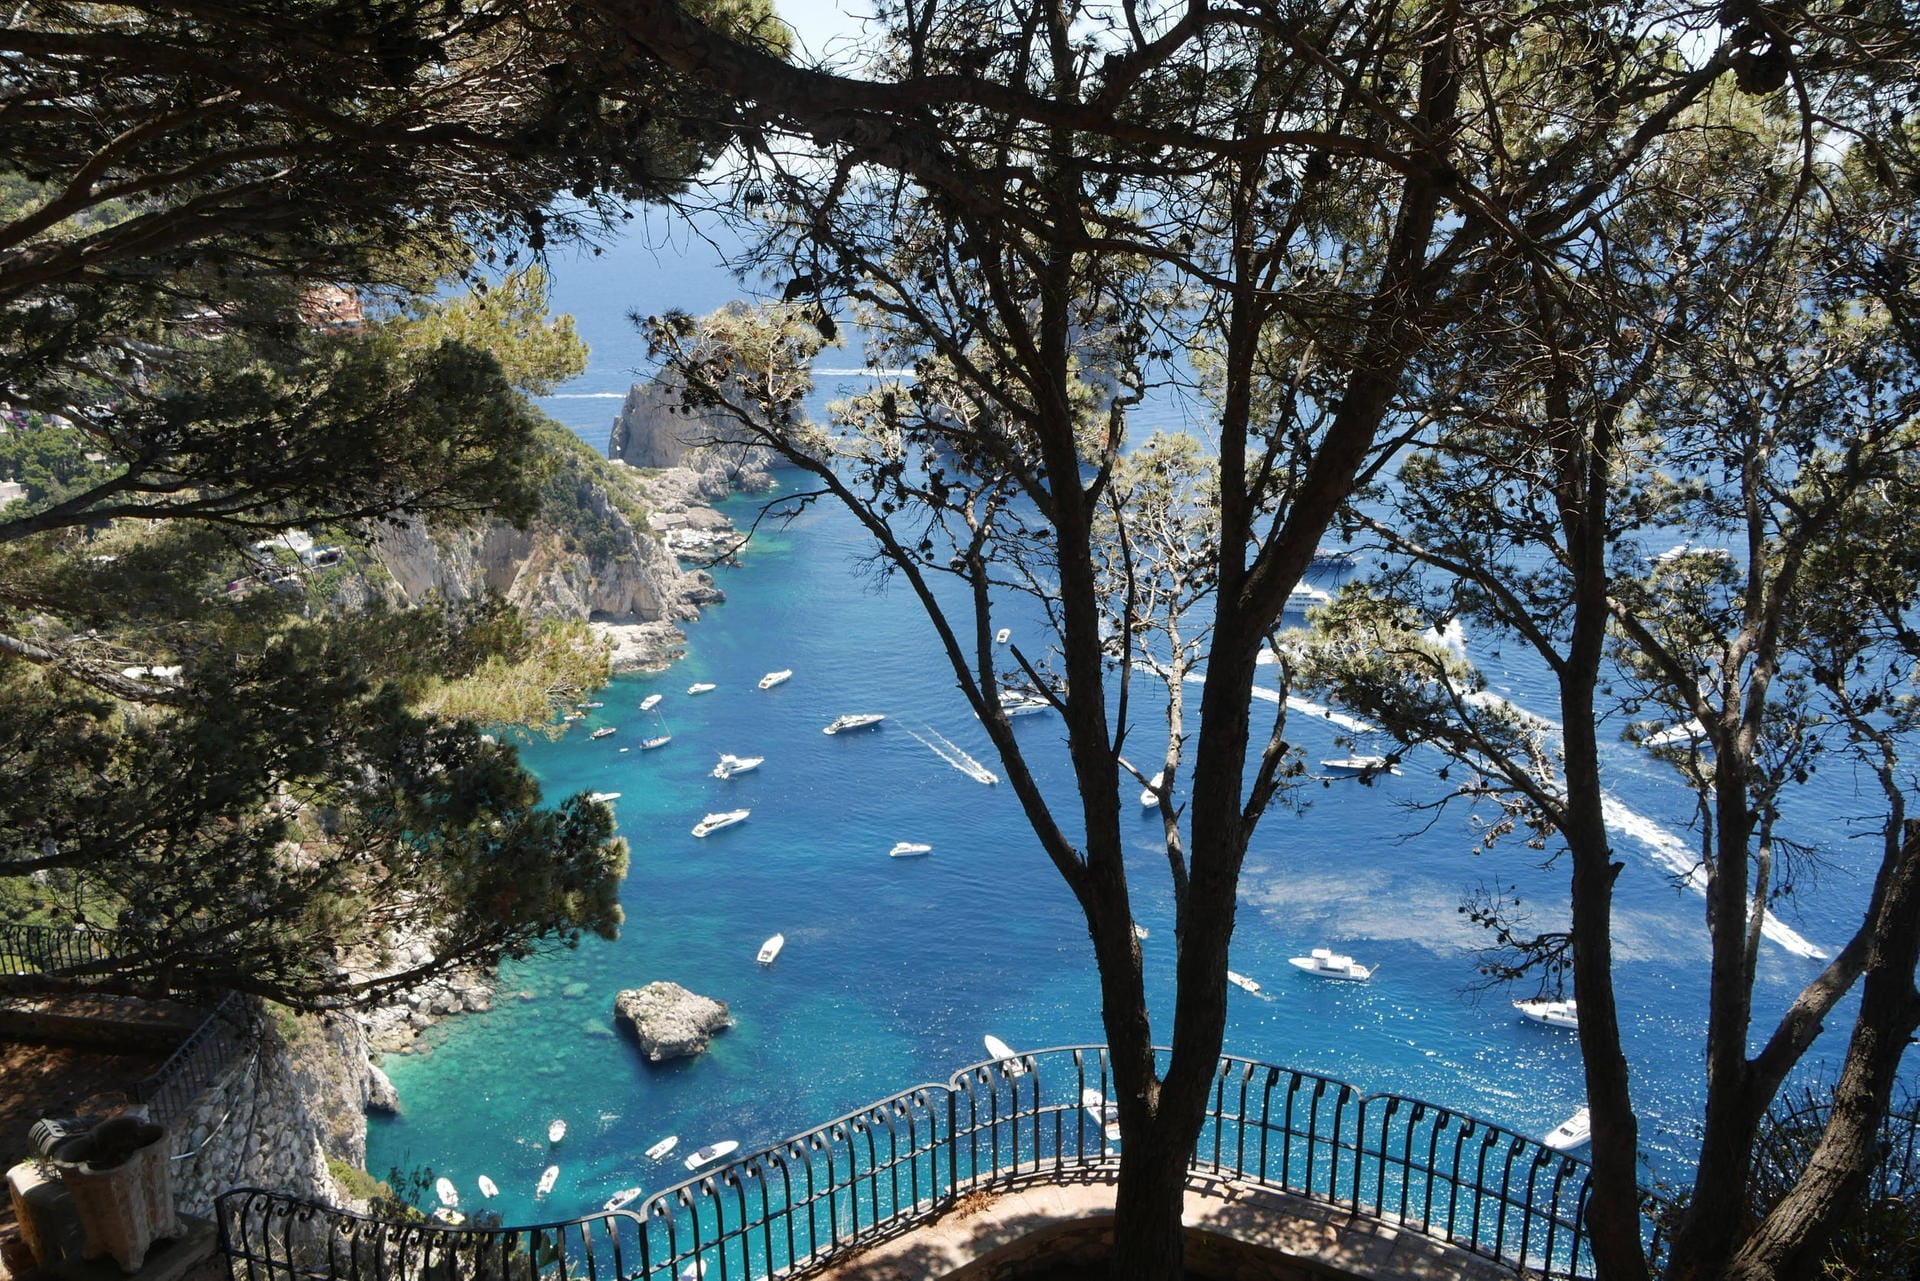 Sehnsuchtsort Capri: am Belvedere Cannone trafen sich die Maler.